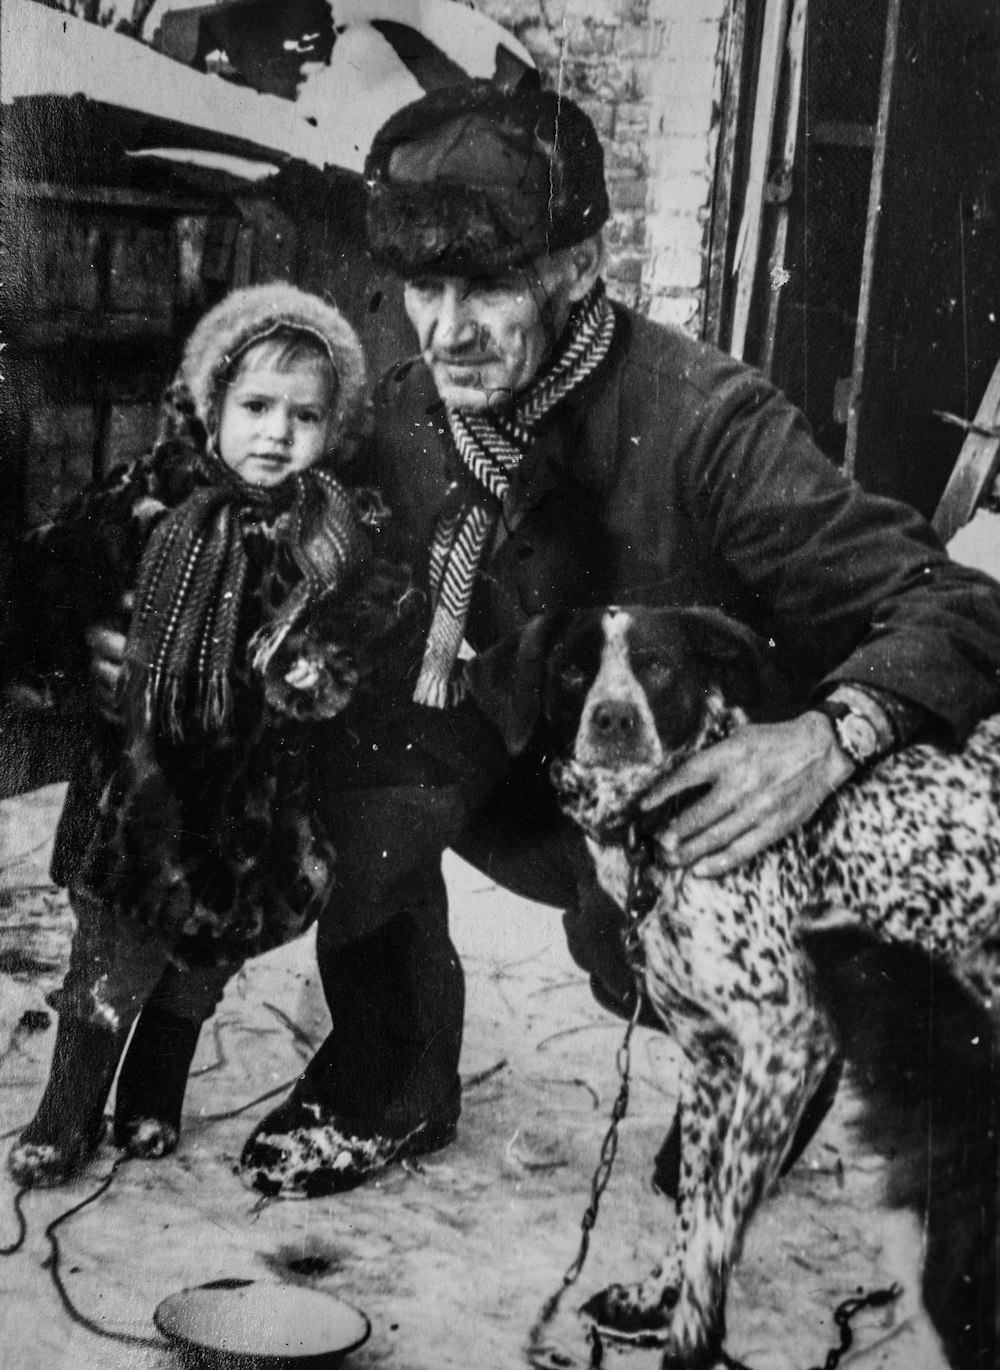 Una vecchia foto di un uomo e un bambino con un cane